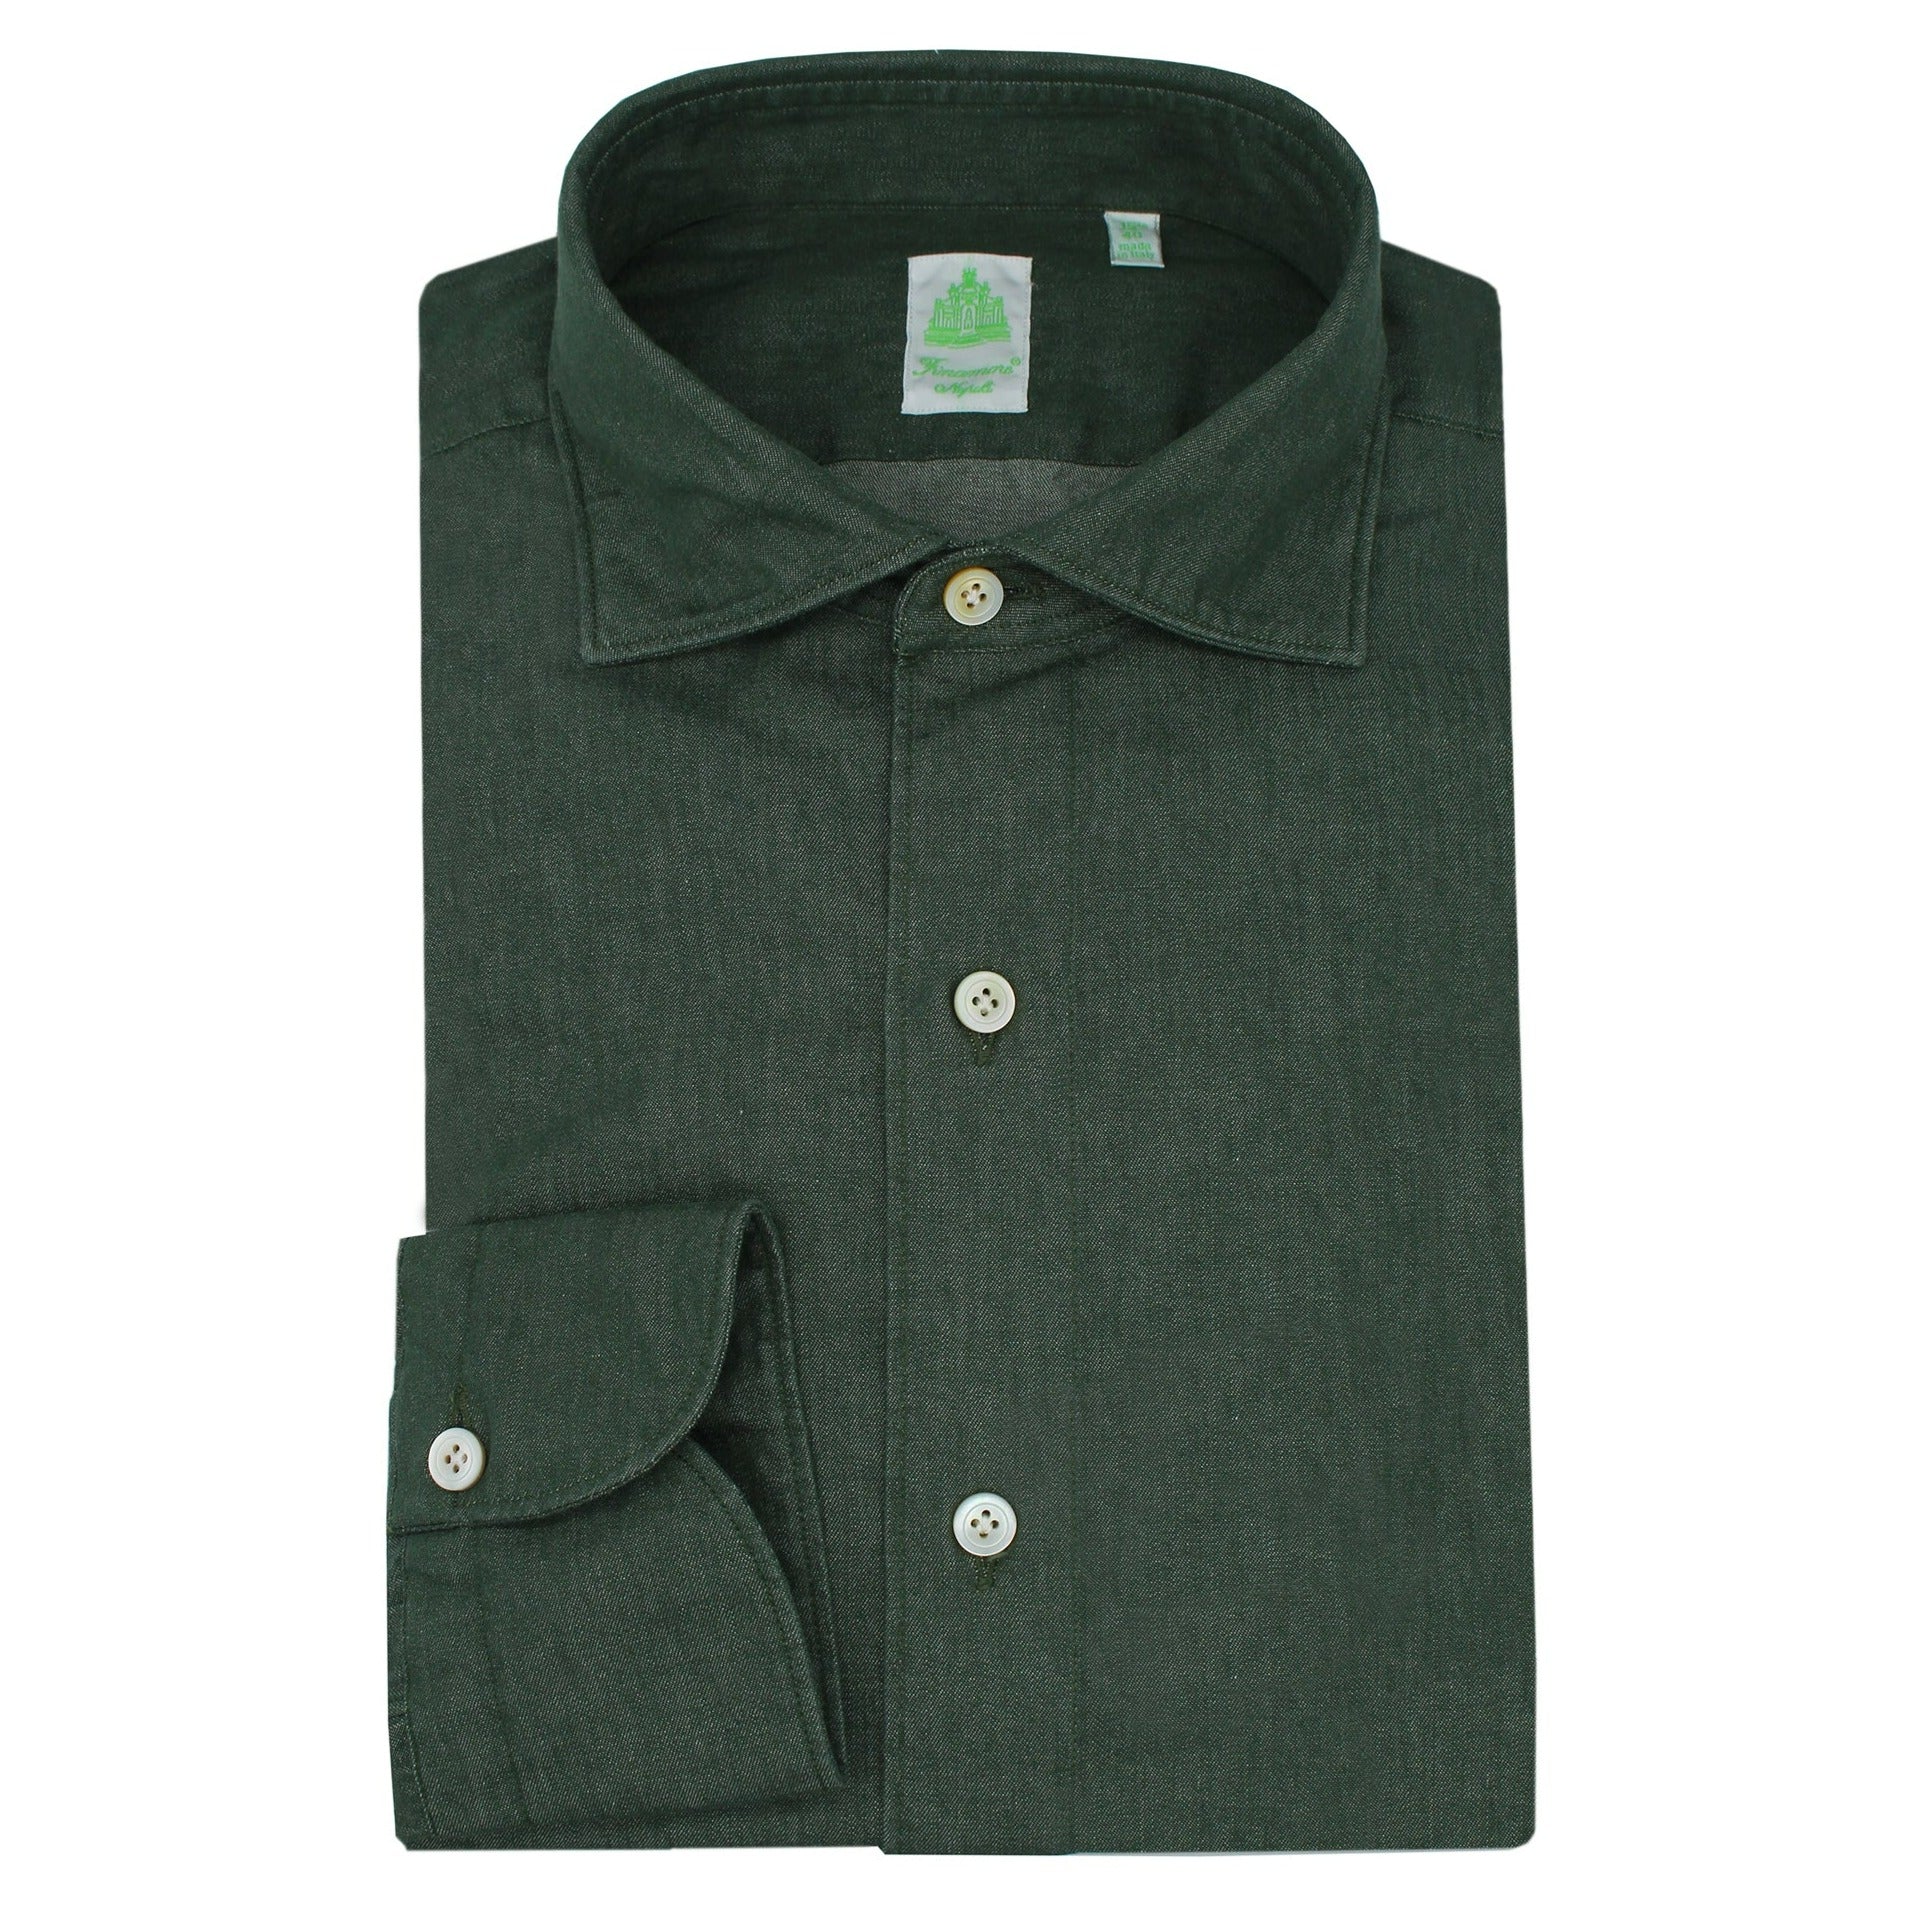 Tokyo Enzimed slim fit sport shirt in dark green cotton